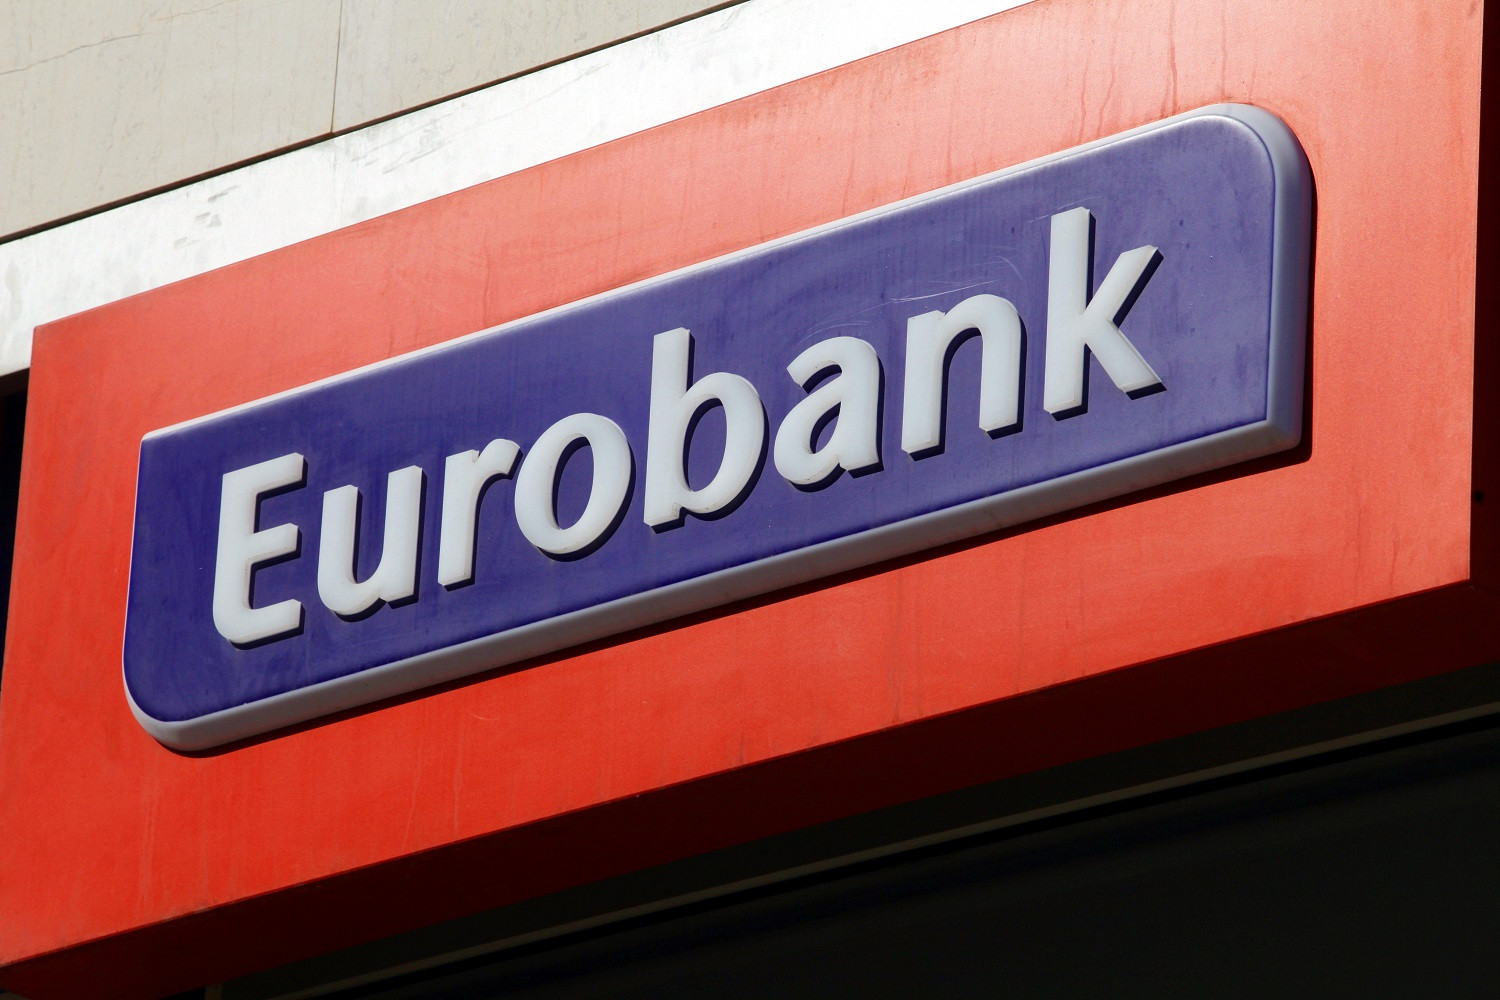 Εκτός ελέγχου οι χάκερς – Τα στοιχεία των πελατών της Eurobank υποκλέπτονται και μεταδίδονται σε πλατφόρμα!